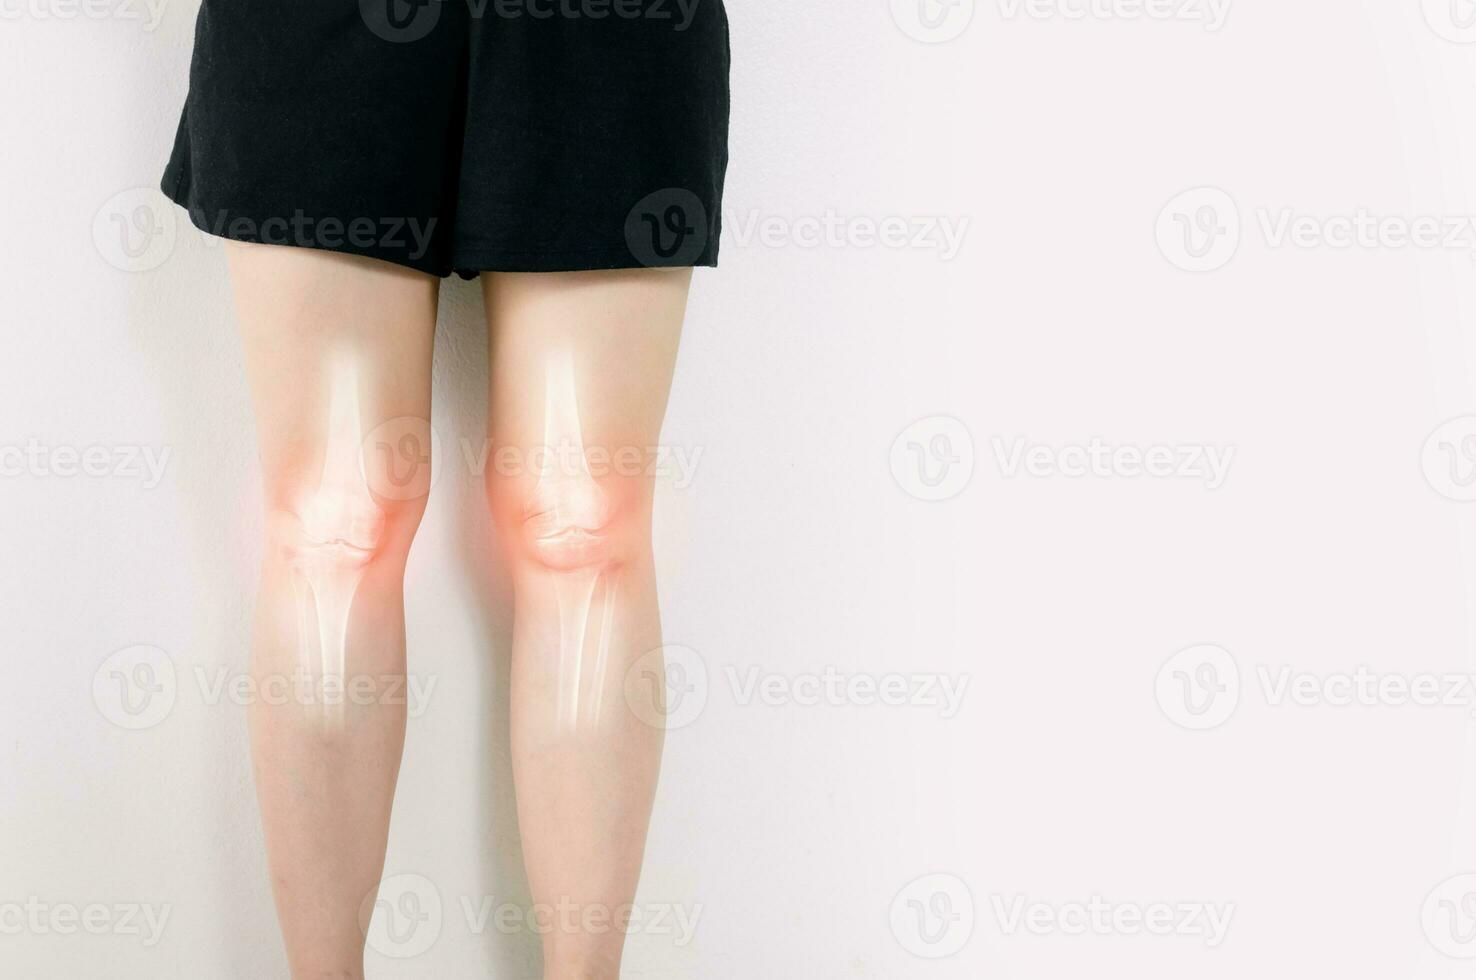 menselijk been artrose ontsteking van bot gewrichten foto